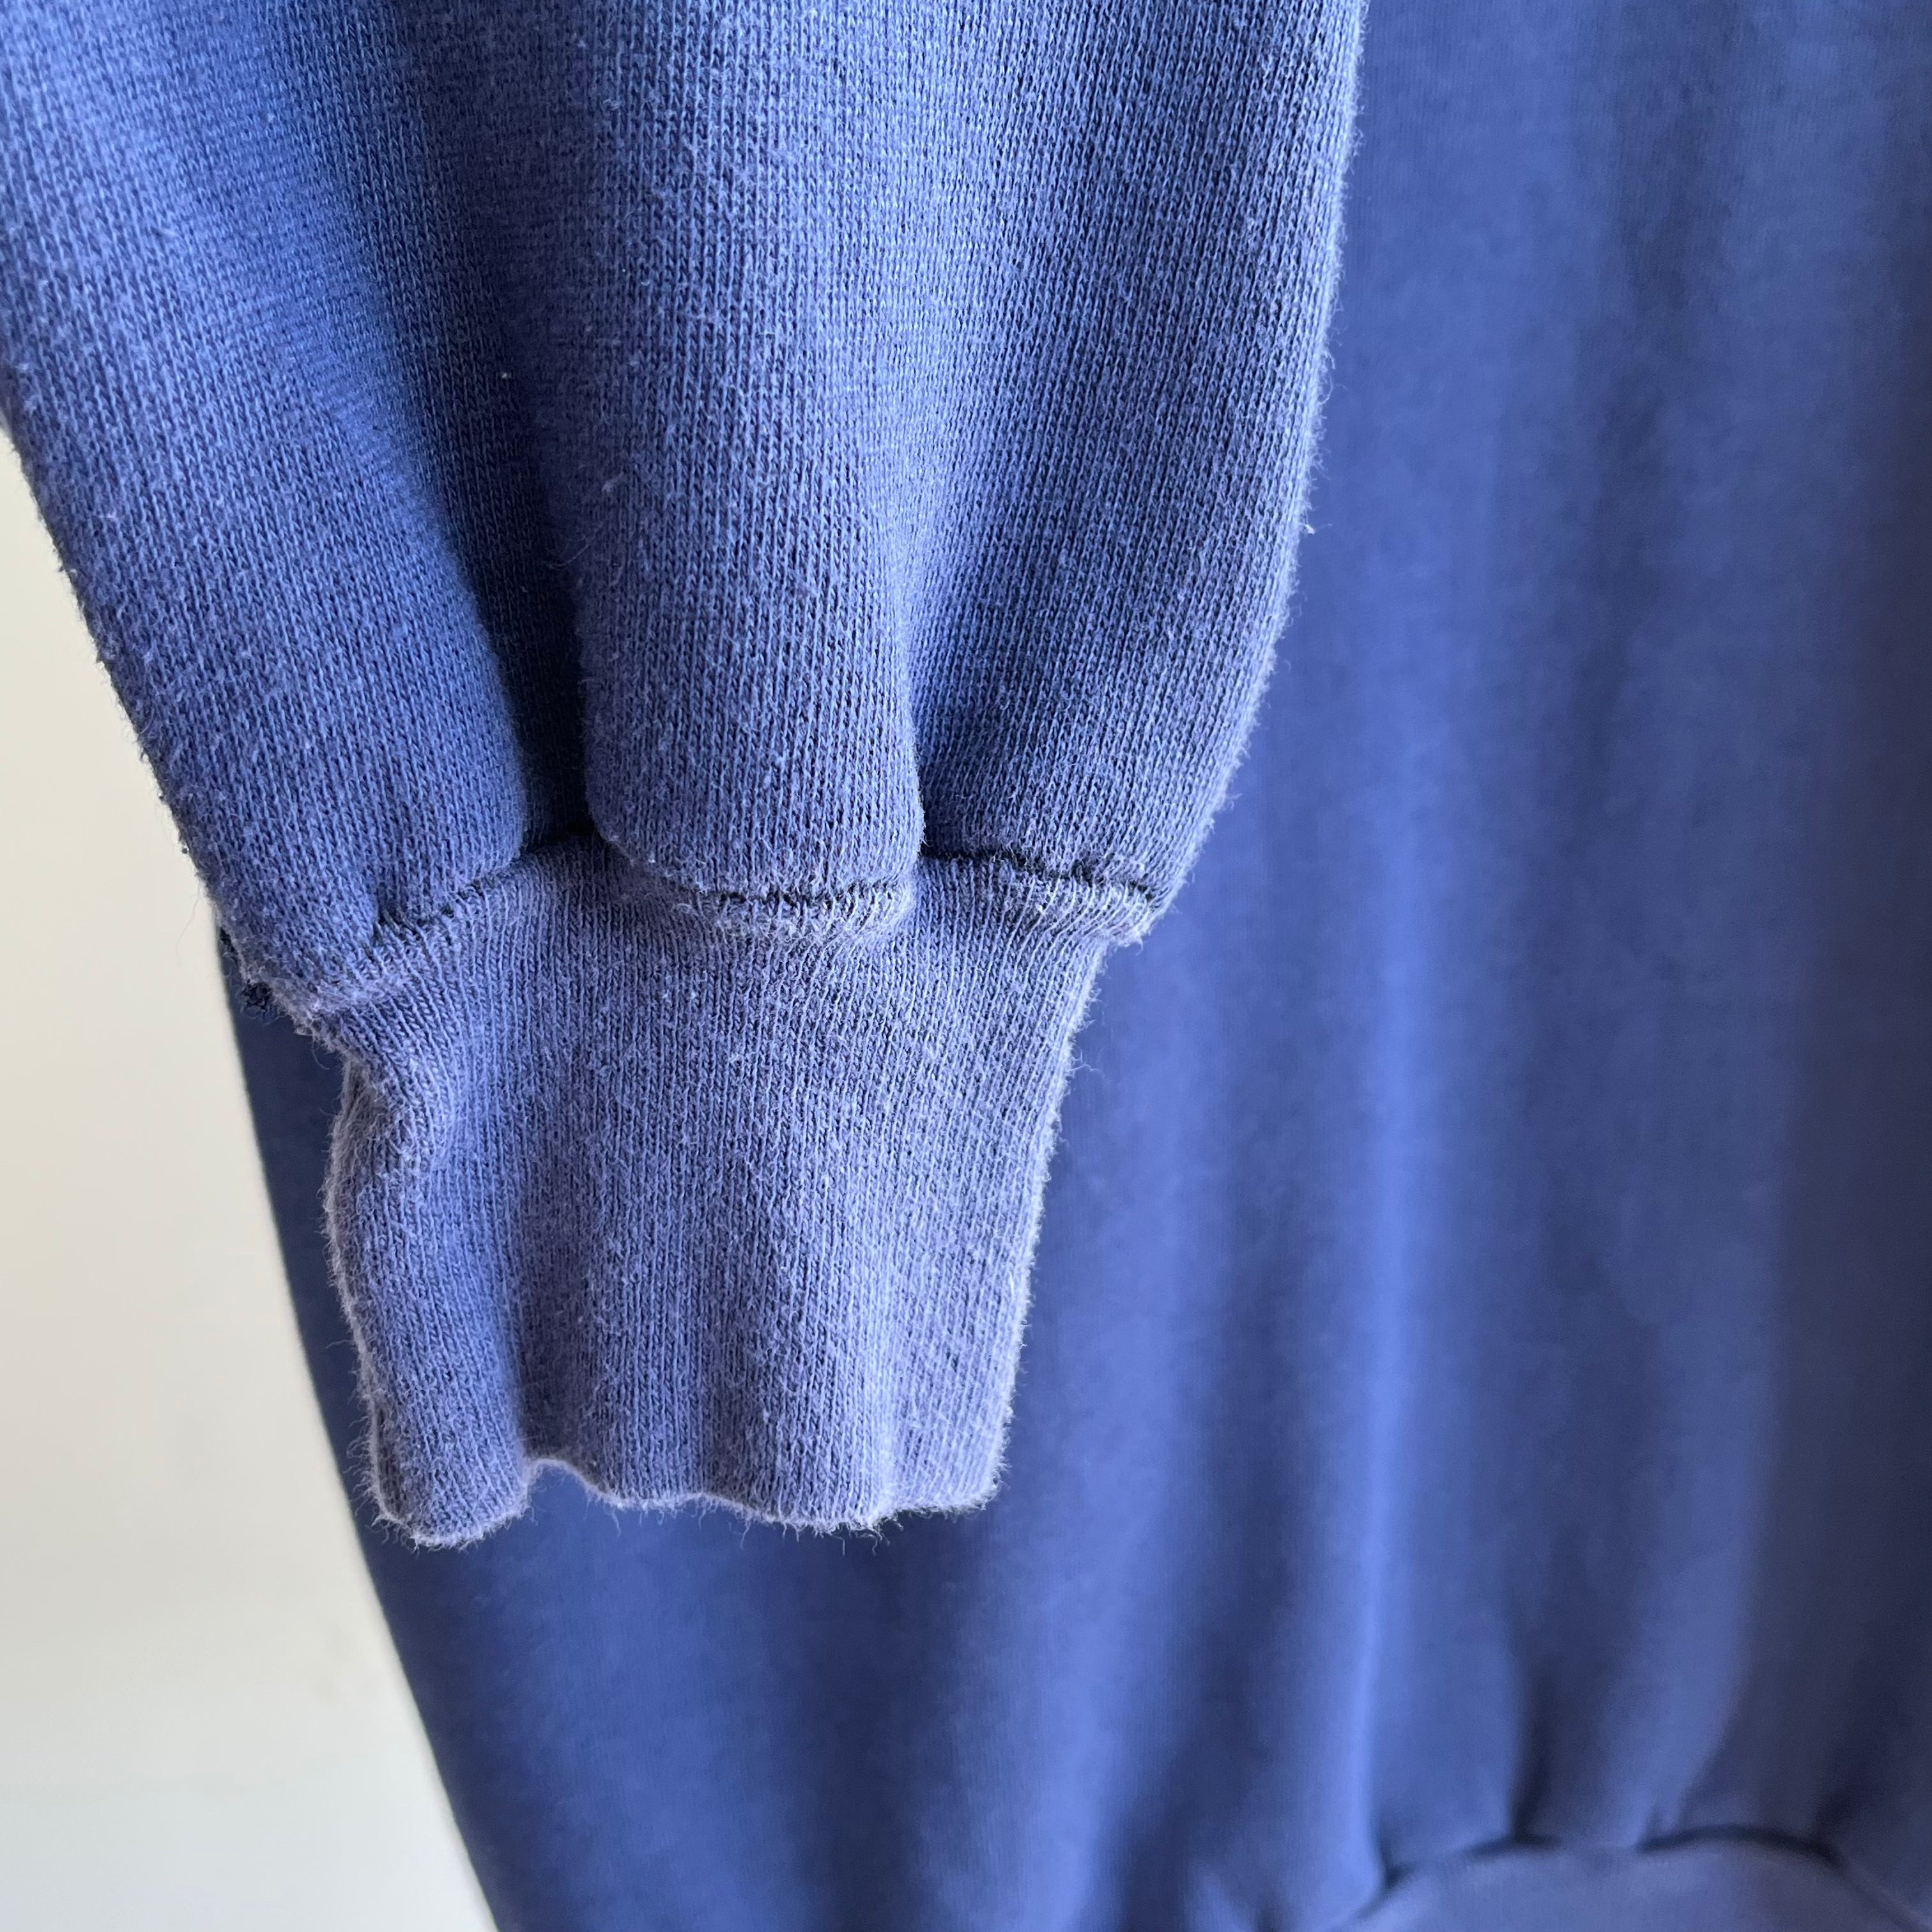 Sweat-shirt à col roulé bleu marine vierge des années 1980 - comme neuf !